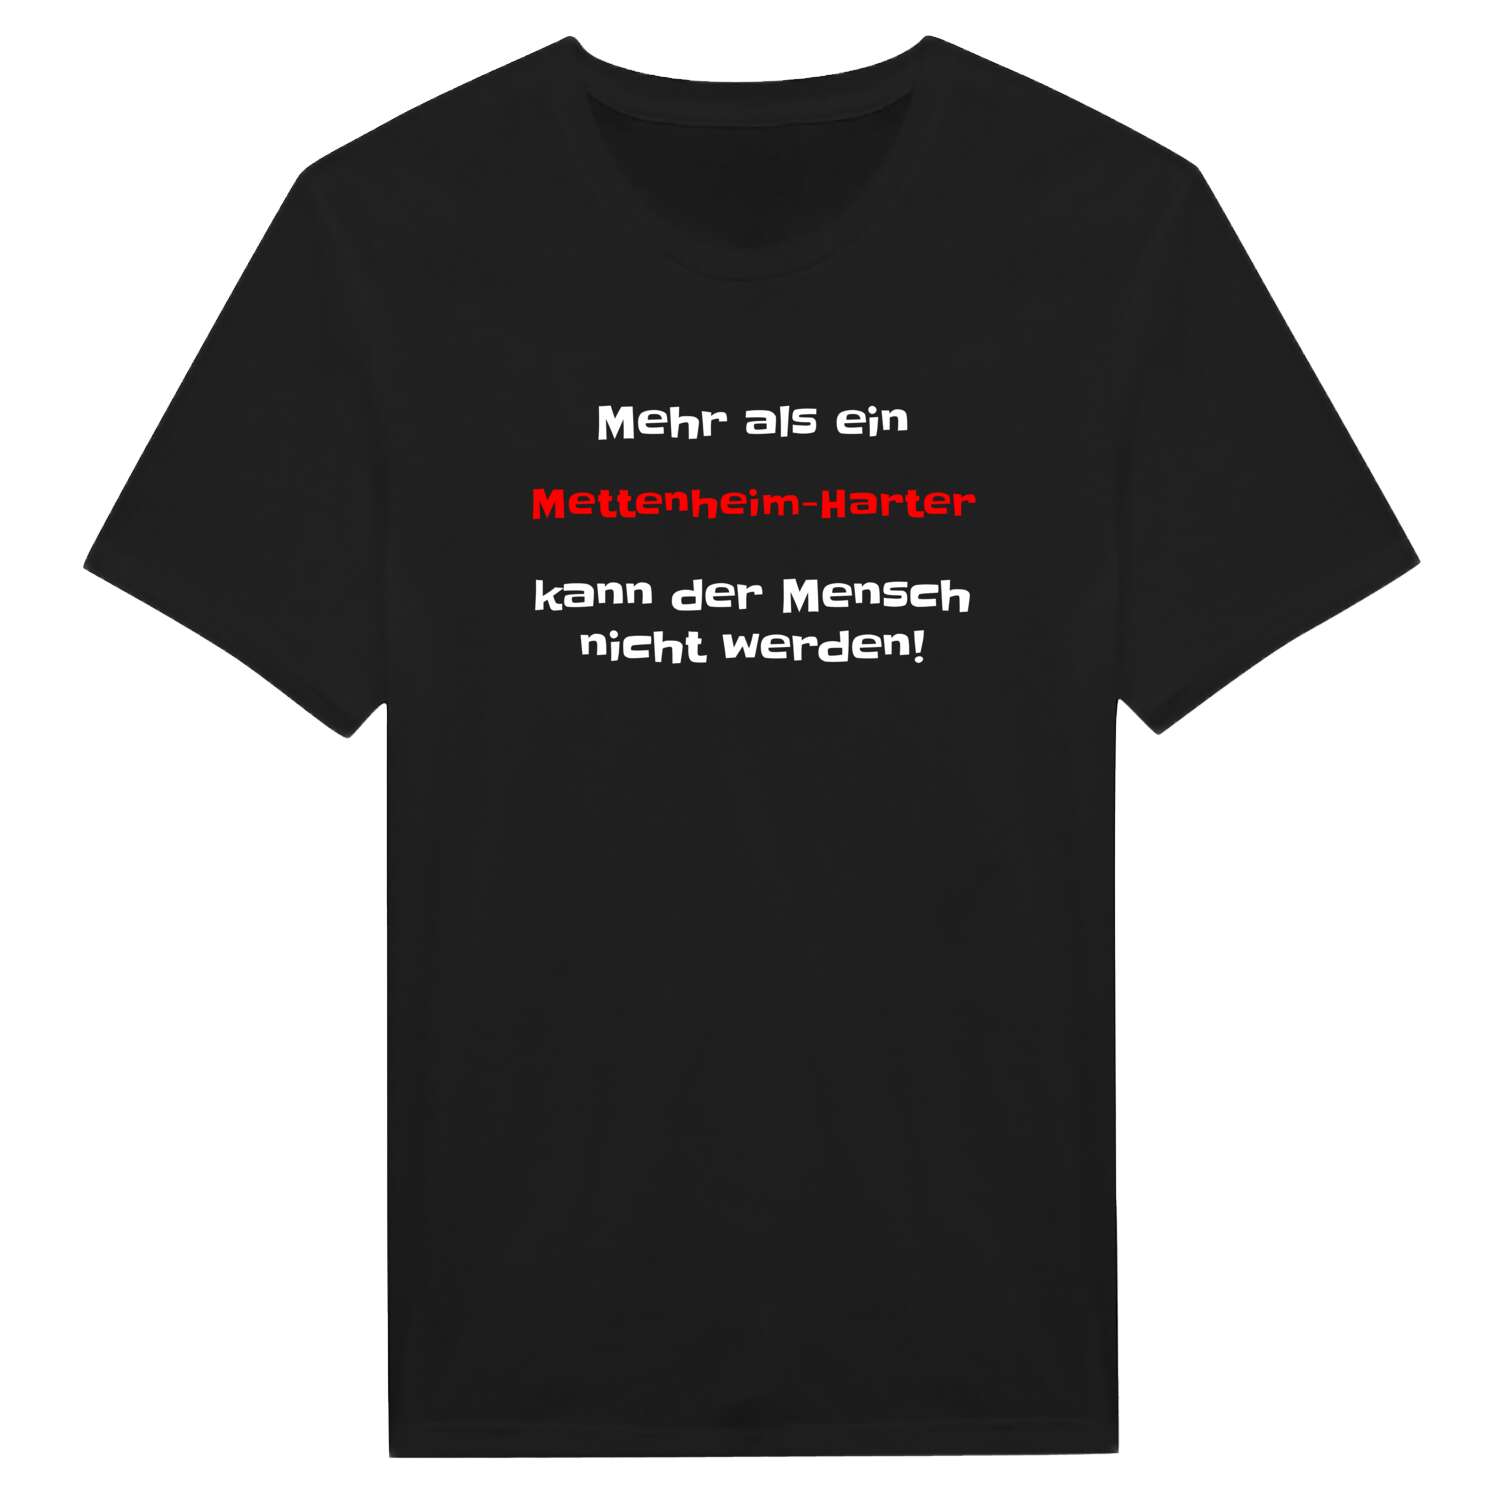 Mettenheim-Hart T-Shirt »Mehr als ein«